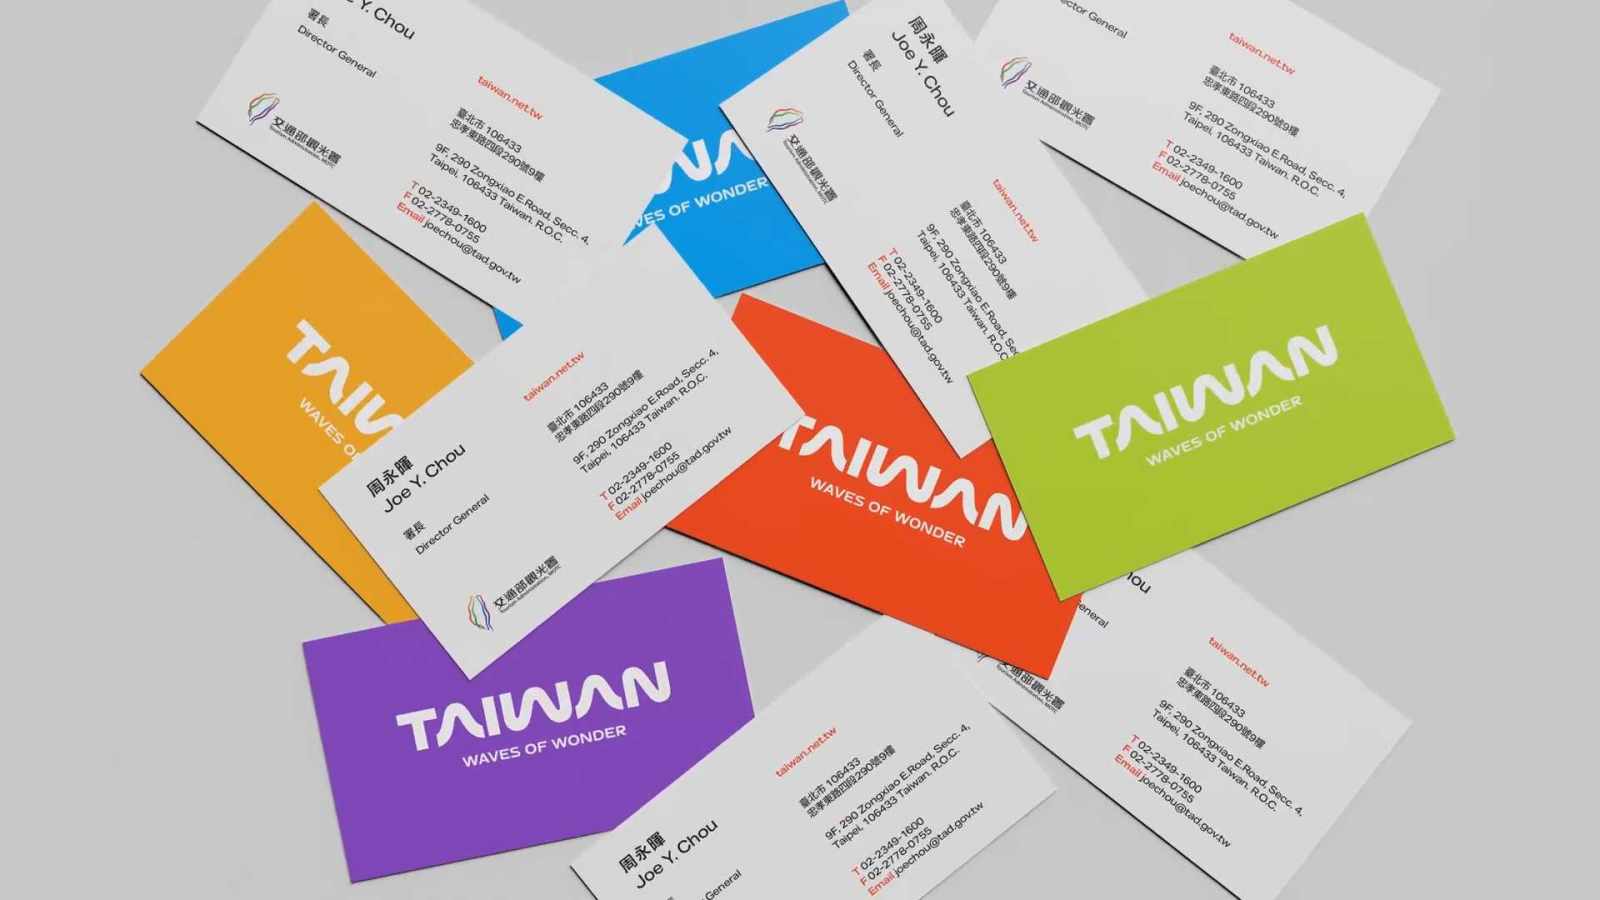 TAIWAN 台湾省全新观光品牌3.0版